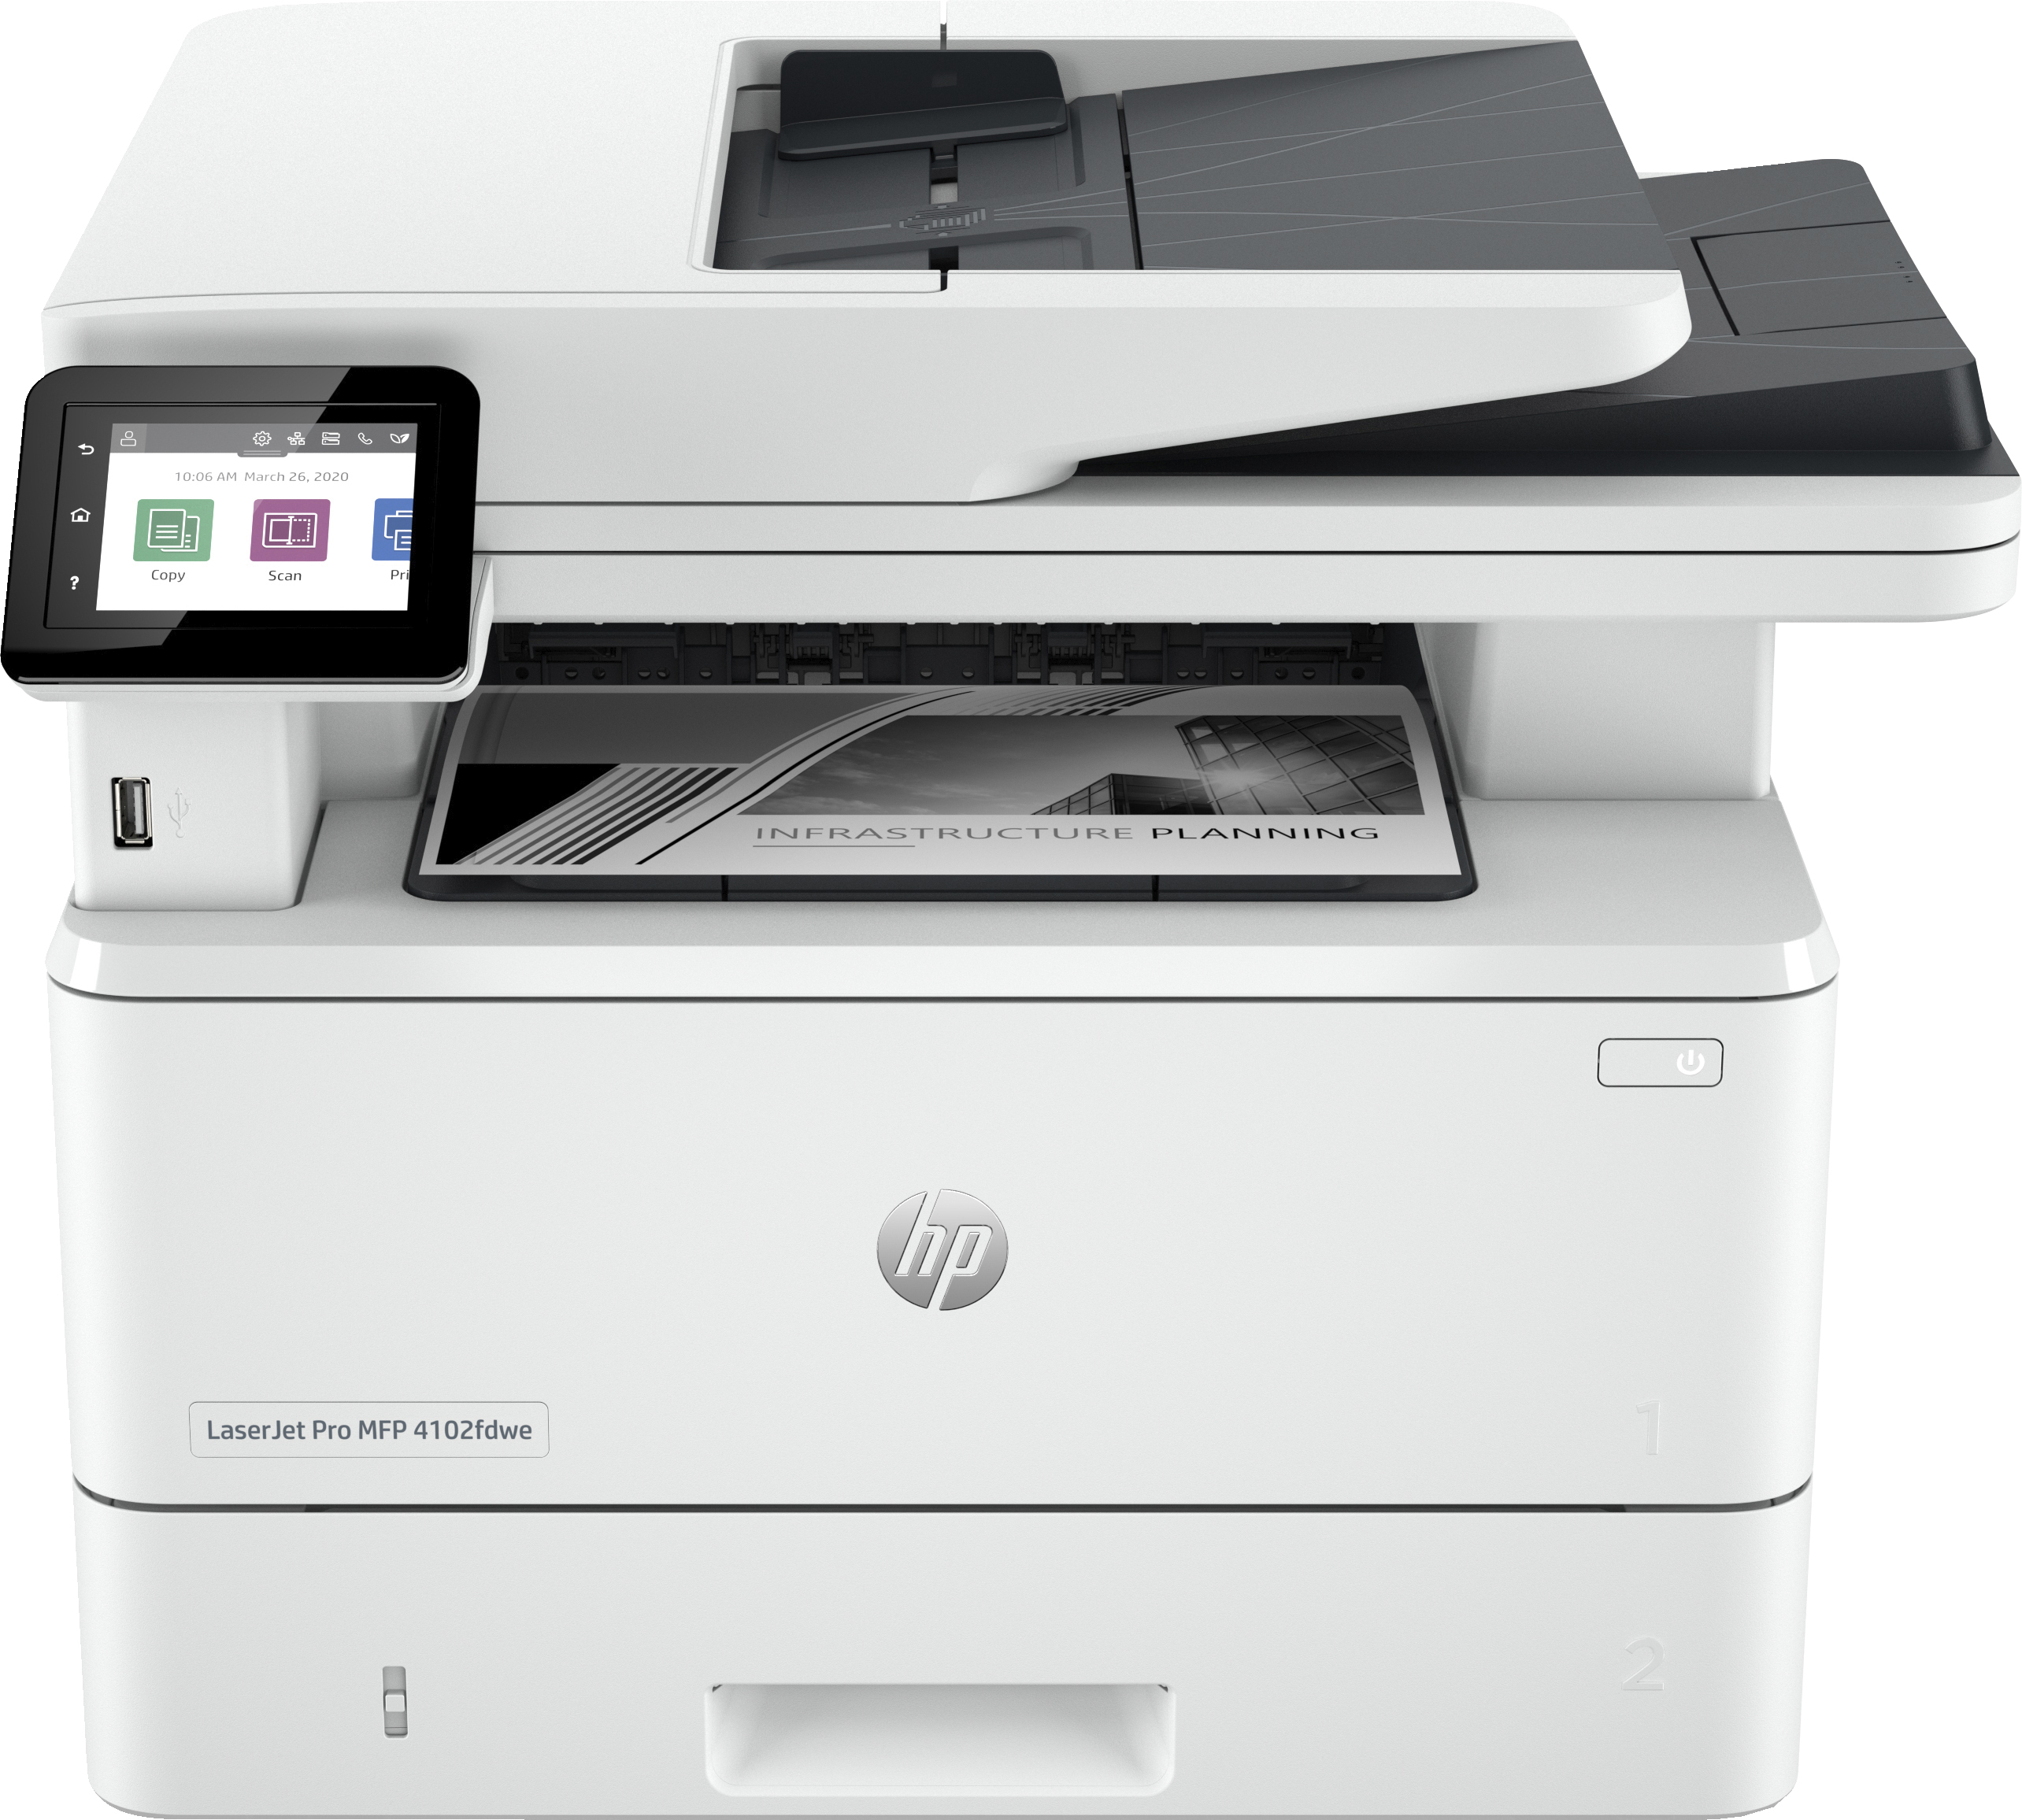 HP HP LaserJet Pro MFP 4102fdwe printer, Zwart-wit, Printer voor Kleine en middelgrote ondernemingen, Printen, kopi&#235;ren, scannen, faxen, Dubbelzijdig printen; Dubbelzijdig scannen; Scannen naar e-mail; USB-poort voorzijde